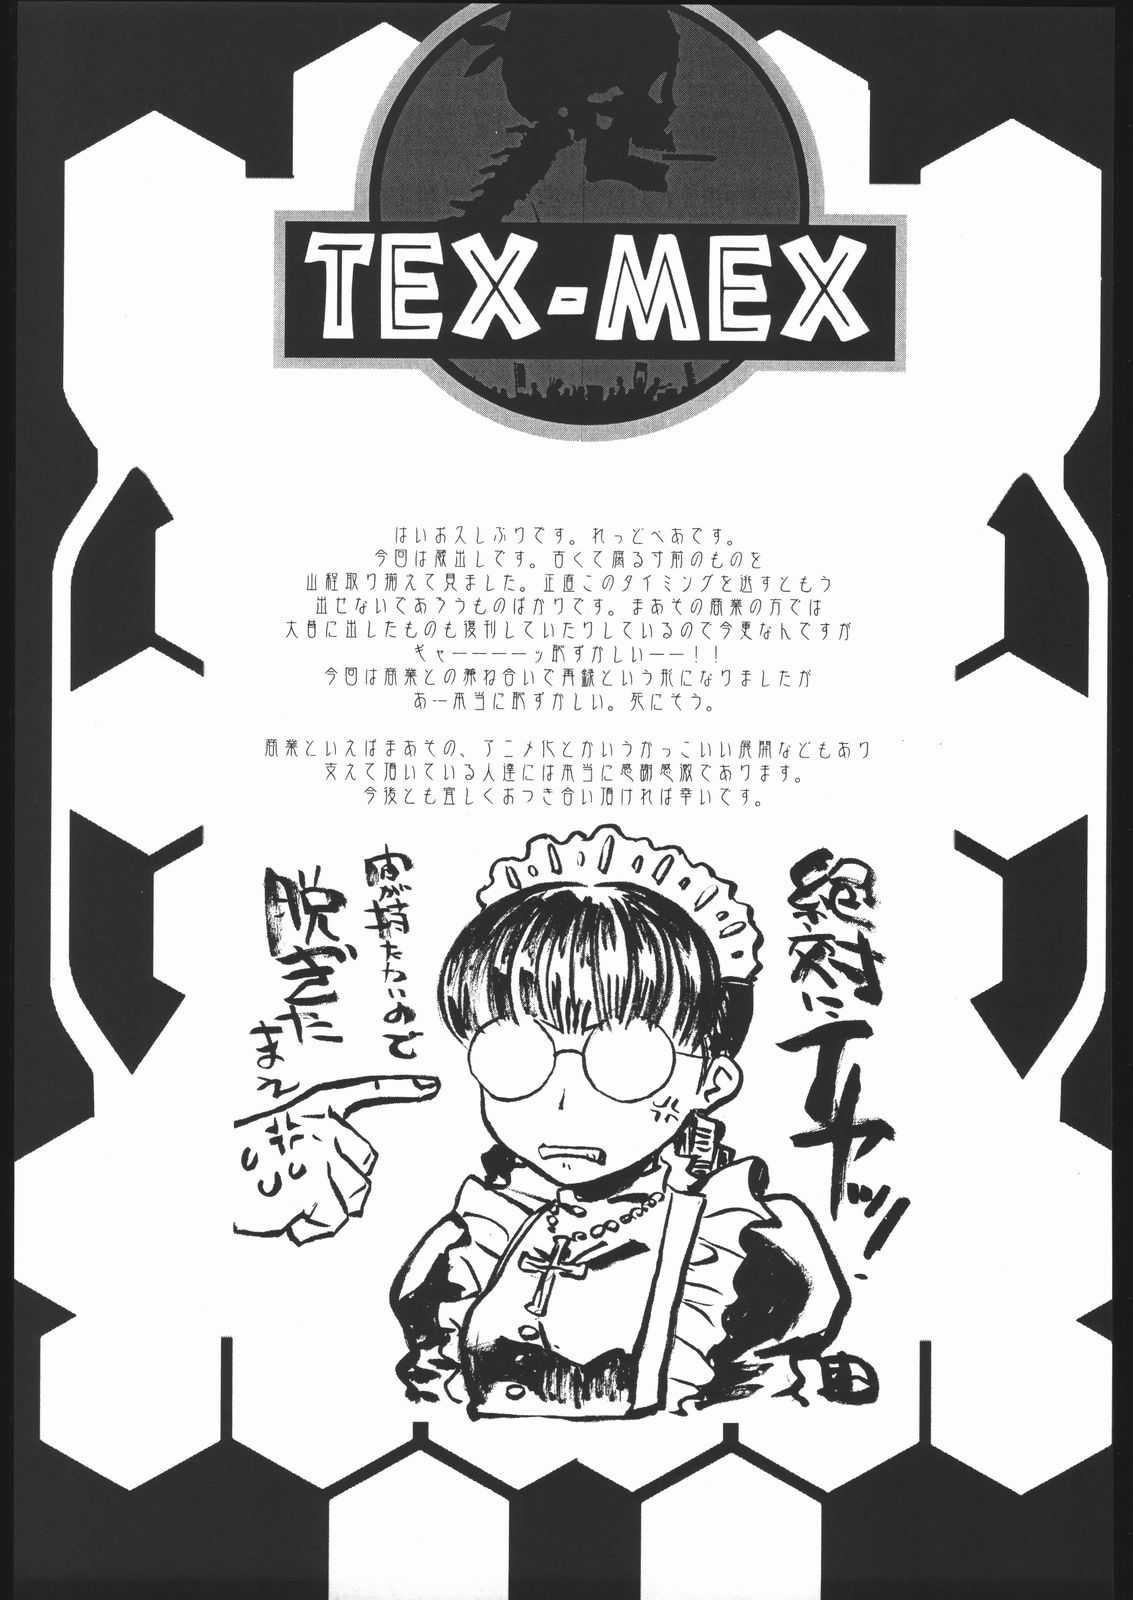 [Various] Way of Tex-Mex (TEX-MEX) 